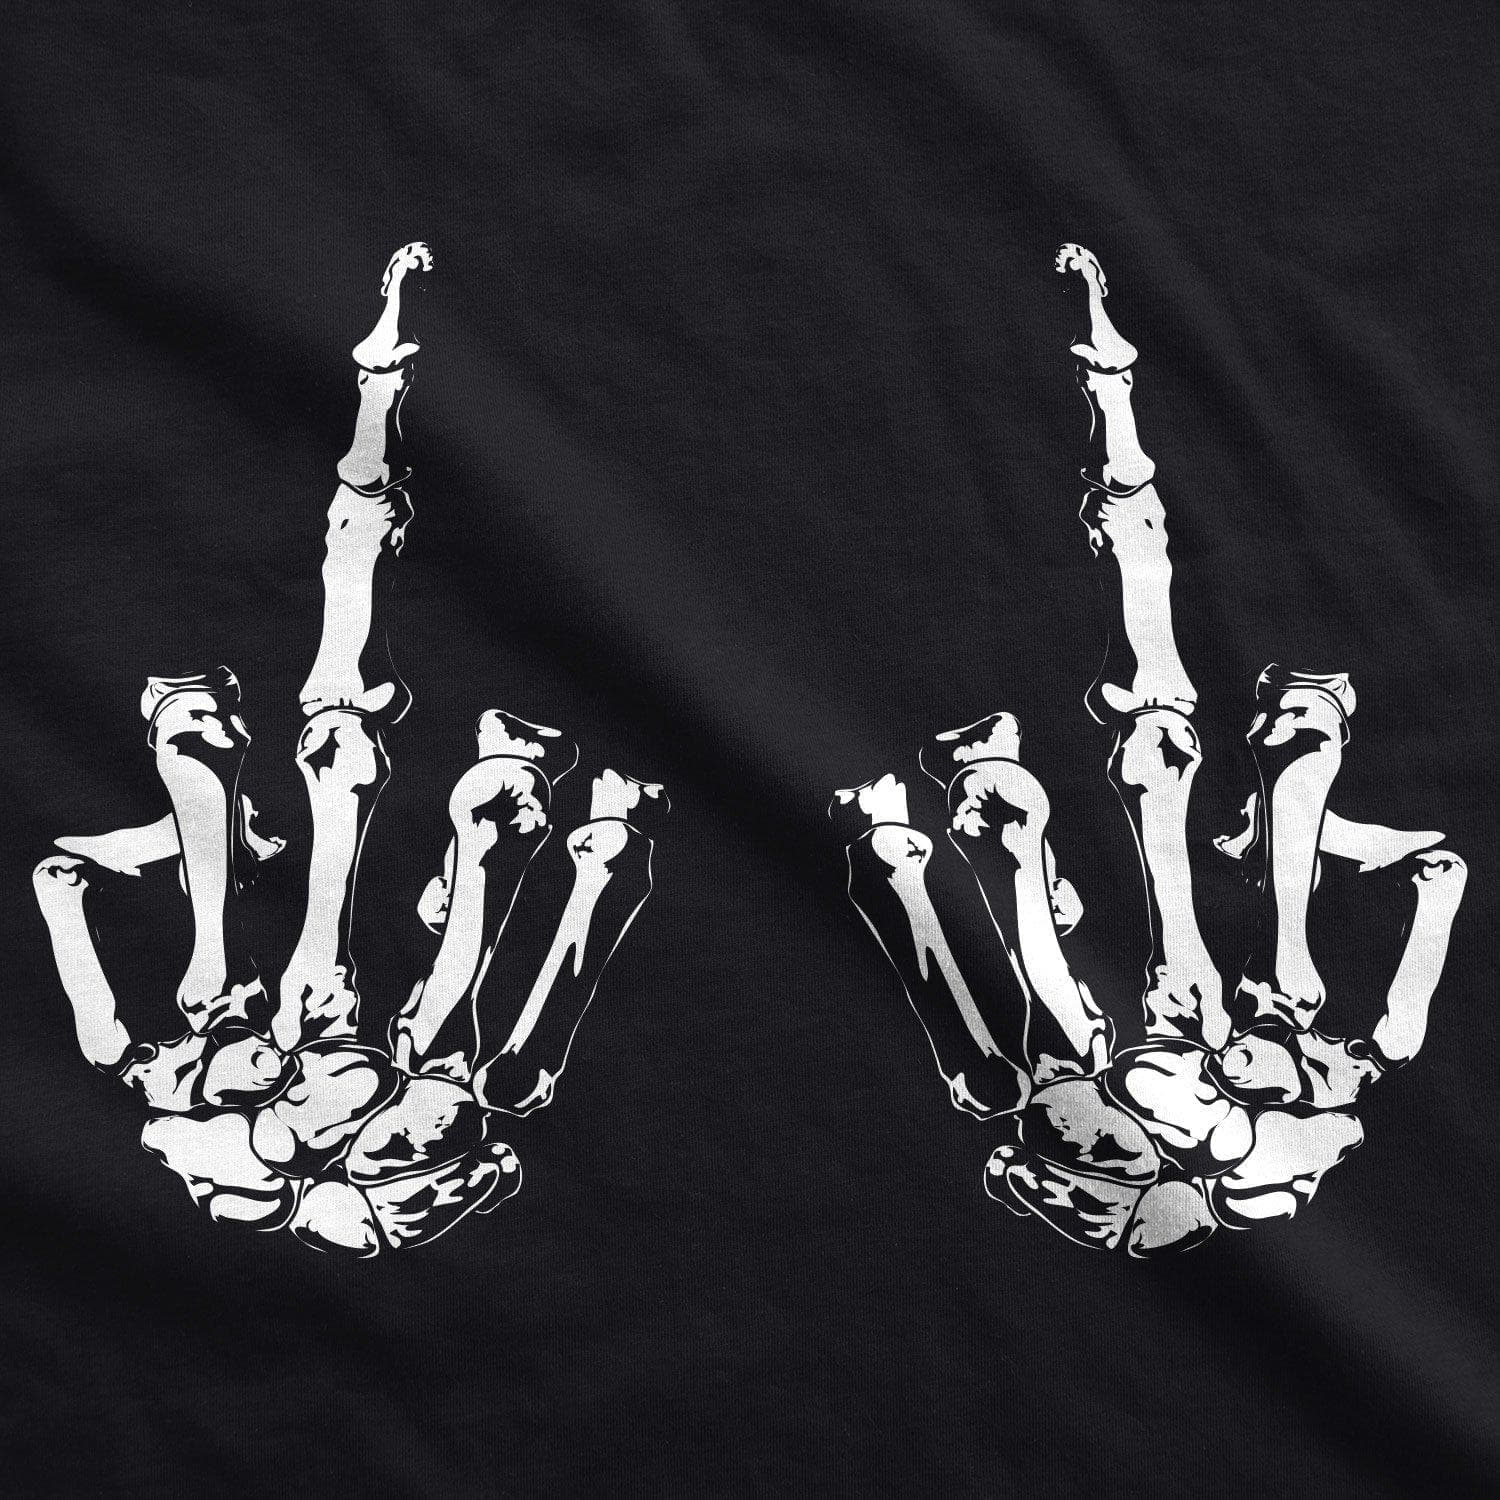 White Skeleton Rib Cage Men's Tshirt - Crazy Dog T-Shirts